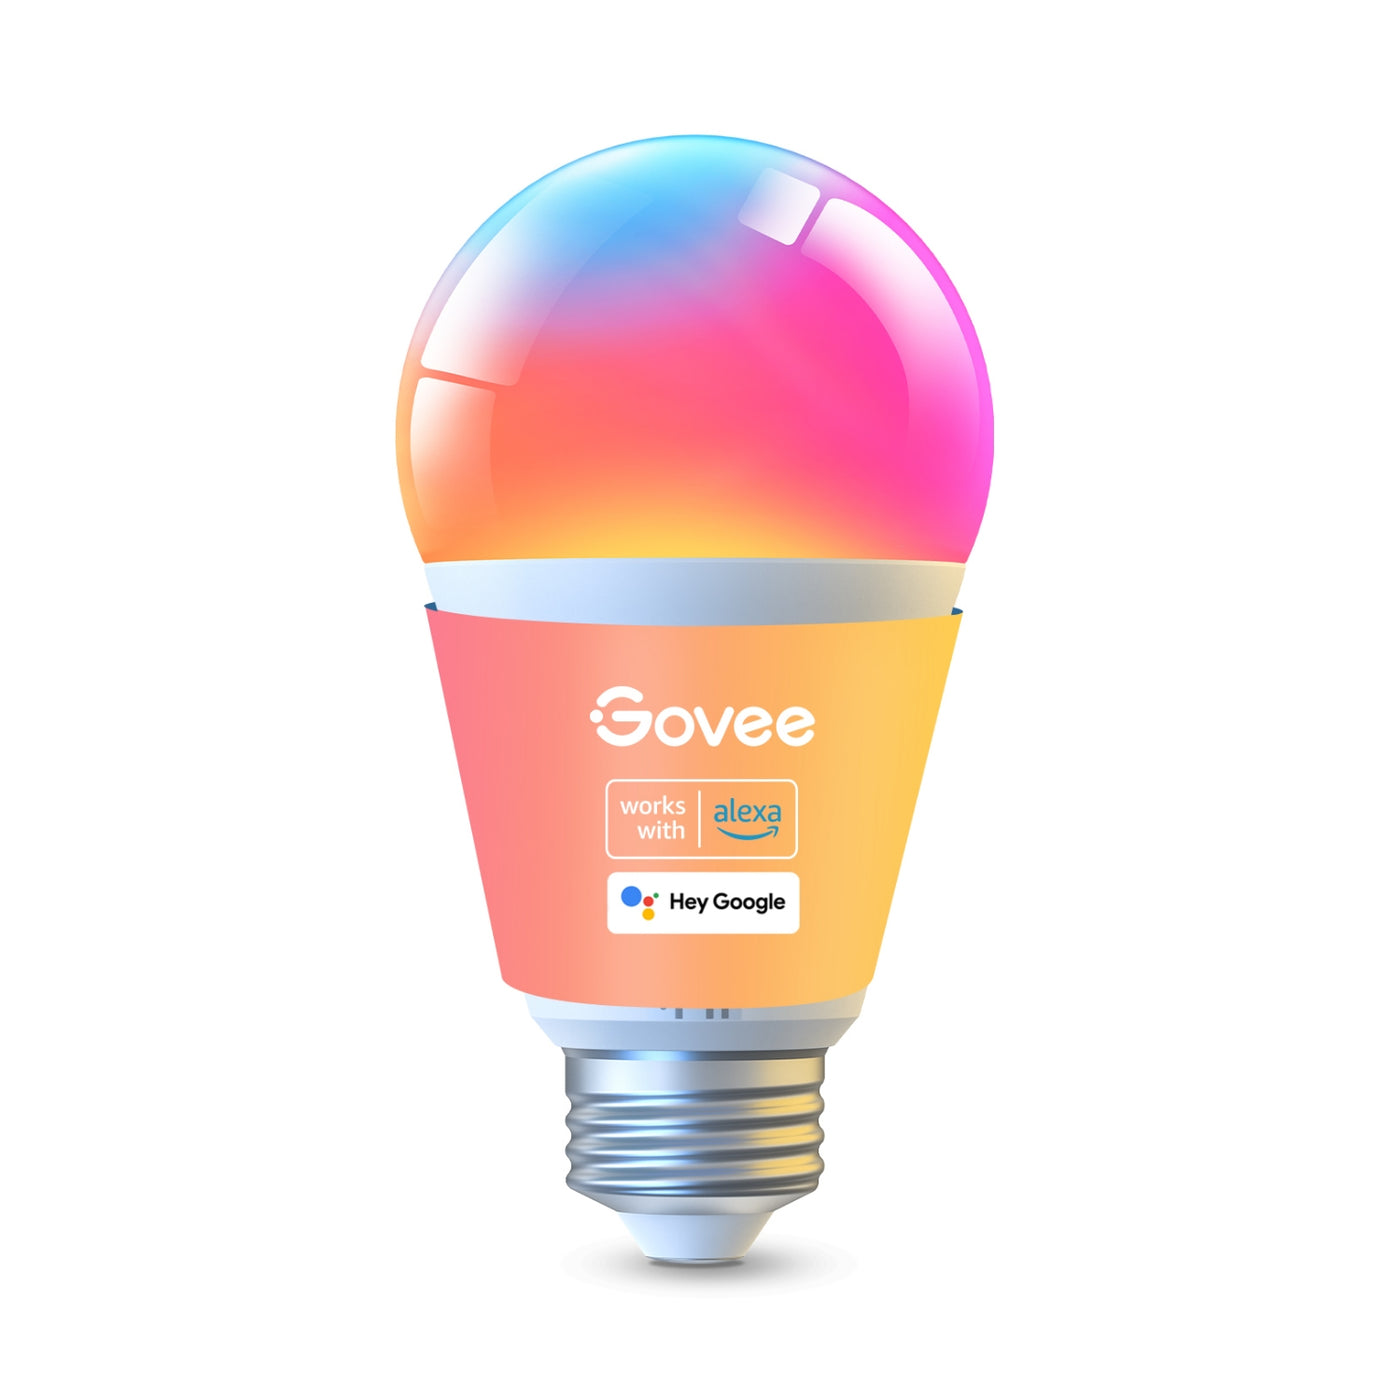 Govee Smart A19 LED Light Bulbs